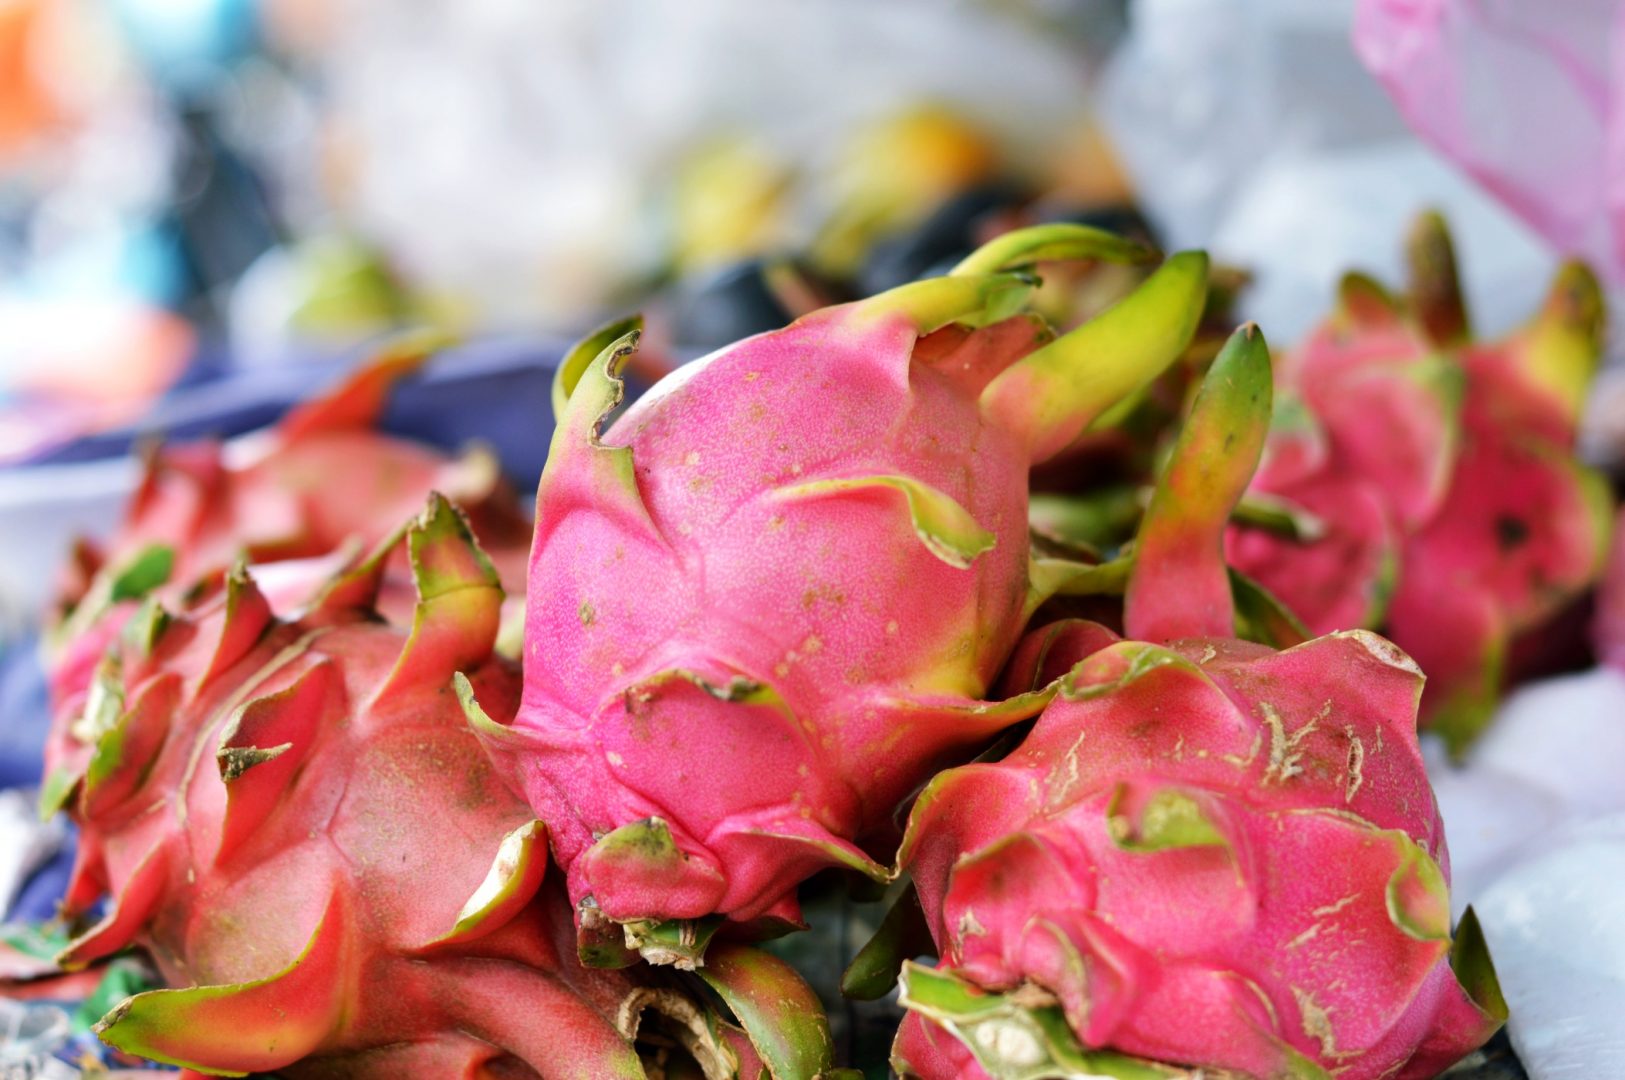 5 exotische Früchte aus Thailand - Drachenfrucht| www.dearlicious.com